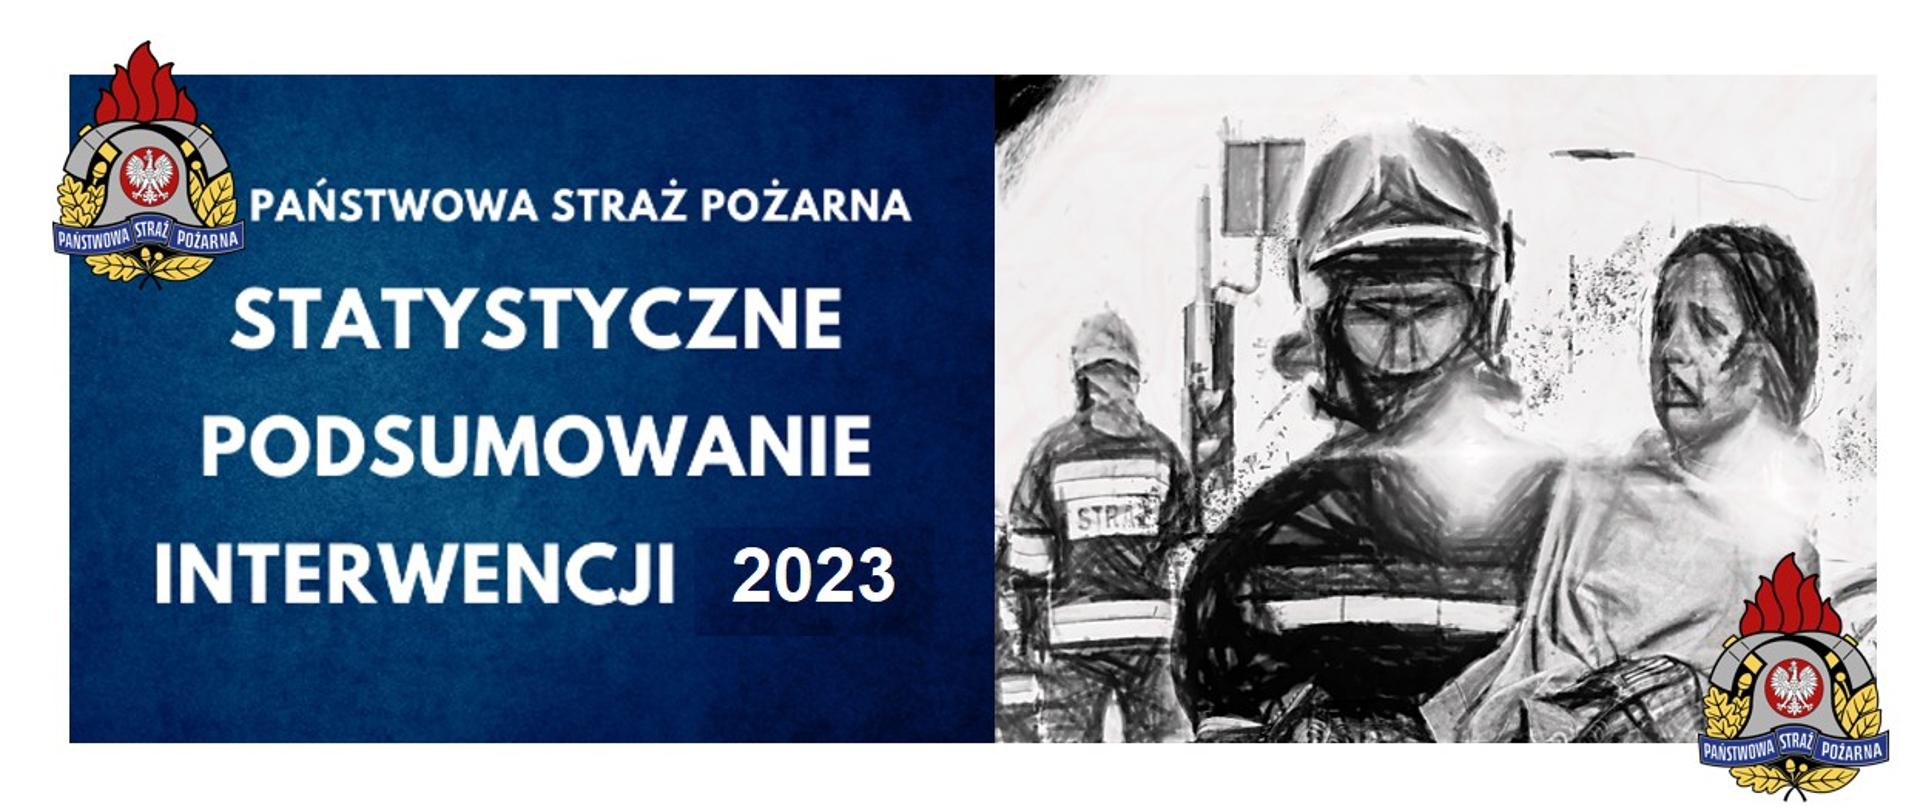 Infografika z logiem Państwowej Straży Pożarnej i napisem "Statystyczne Podsumowanie Interwencji 2023".